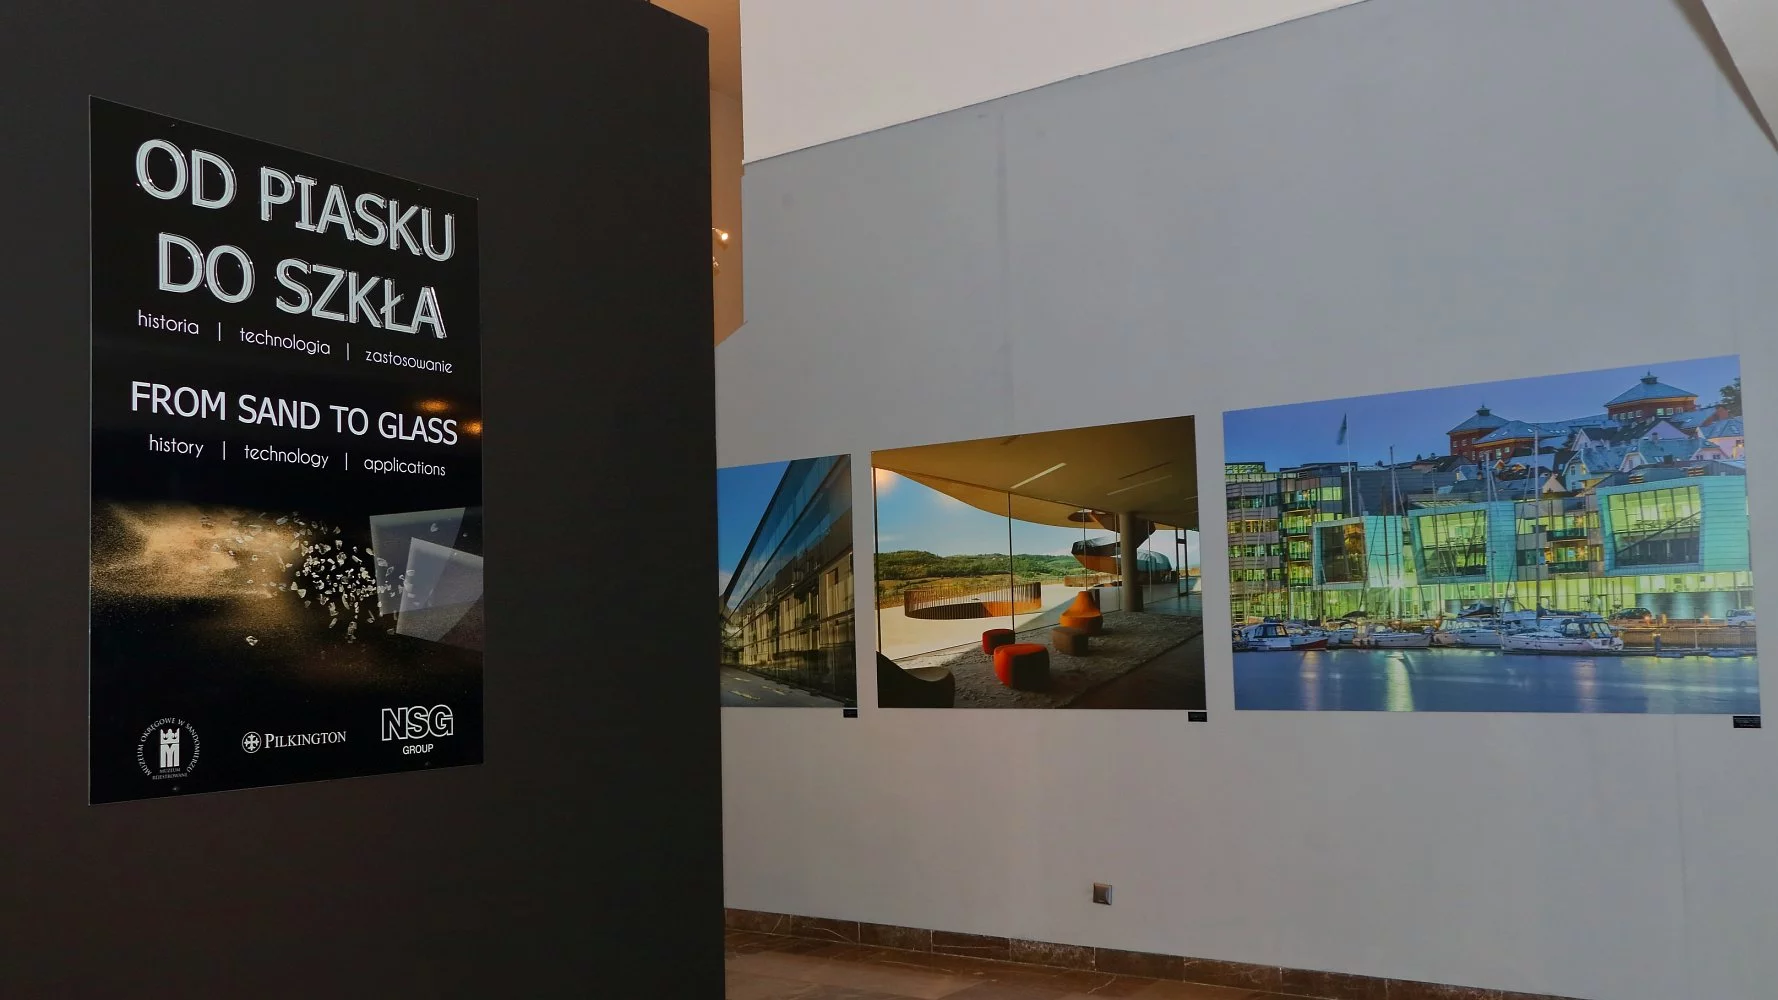 Od ziarna piasku po taflę szkła - rusza interaktywna wystawa edukacyjna w Sandomierzu